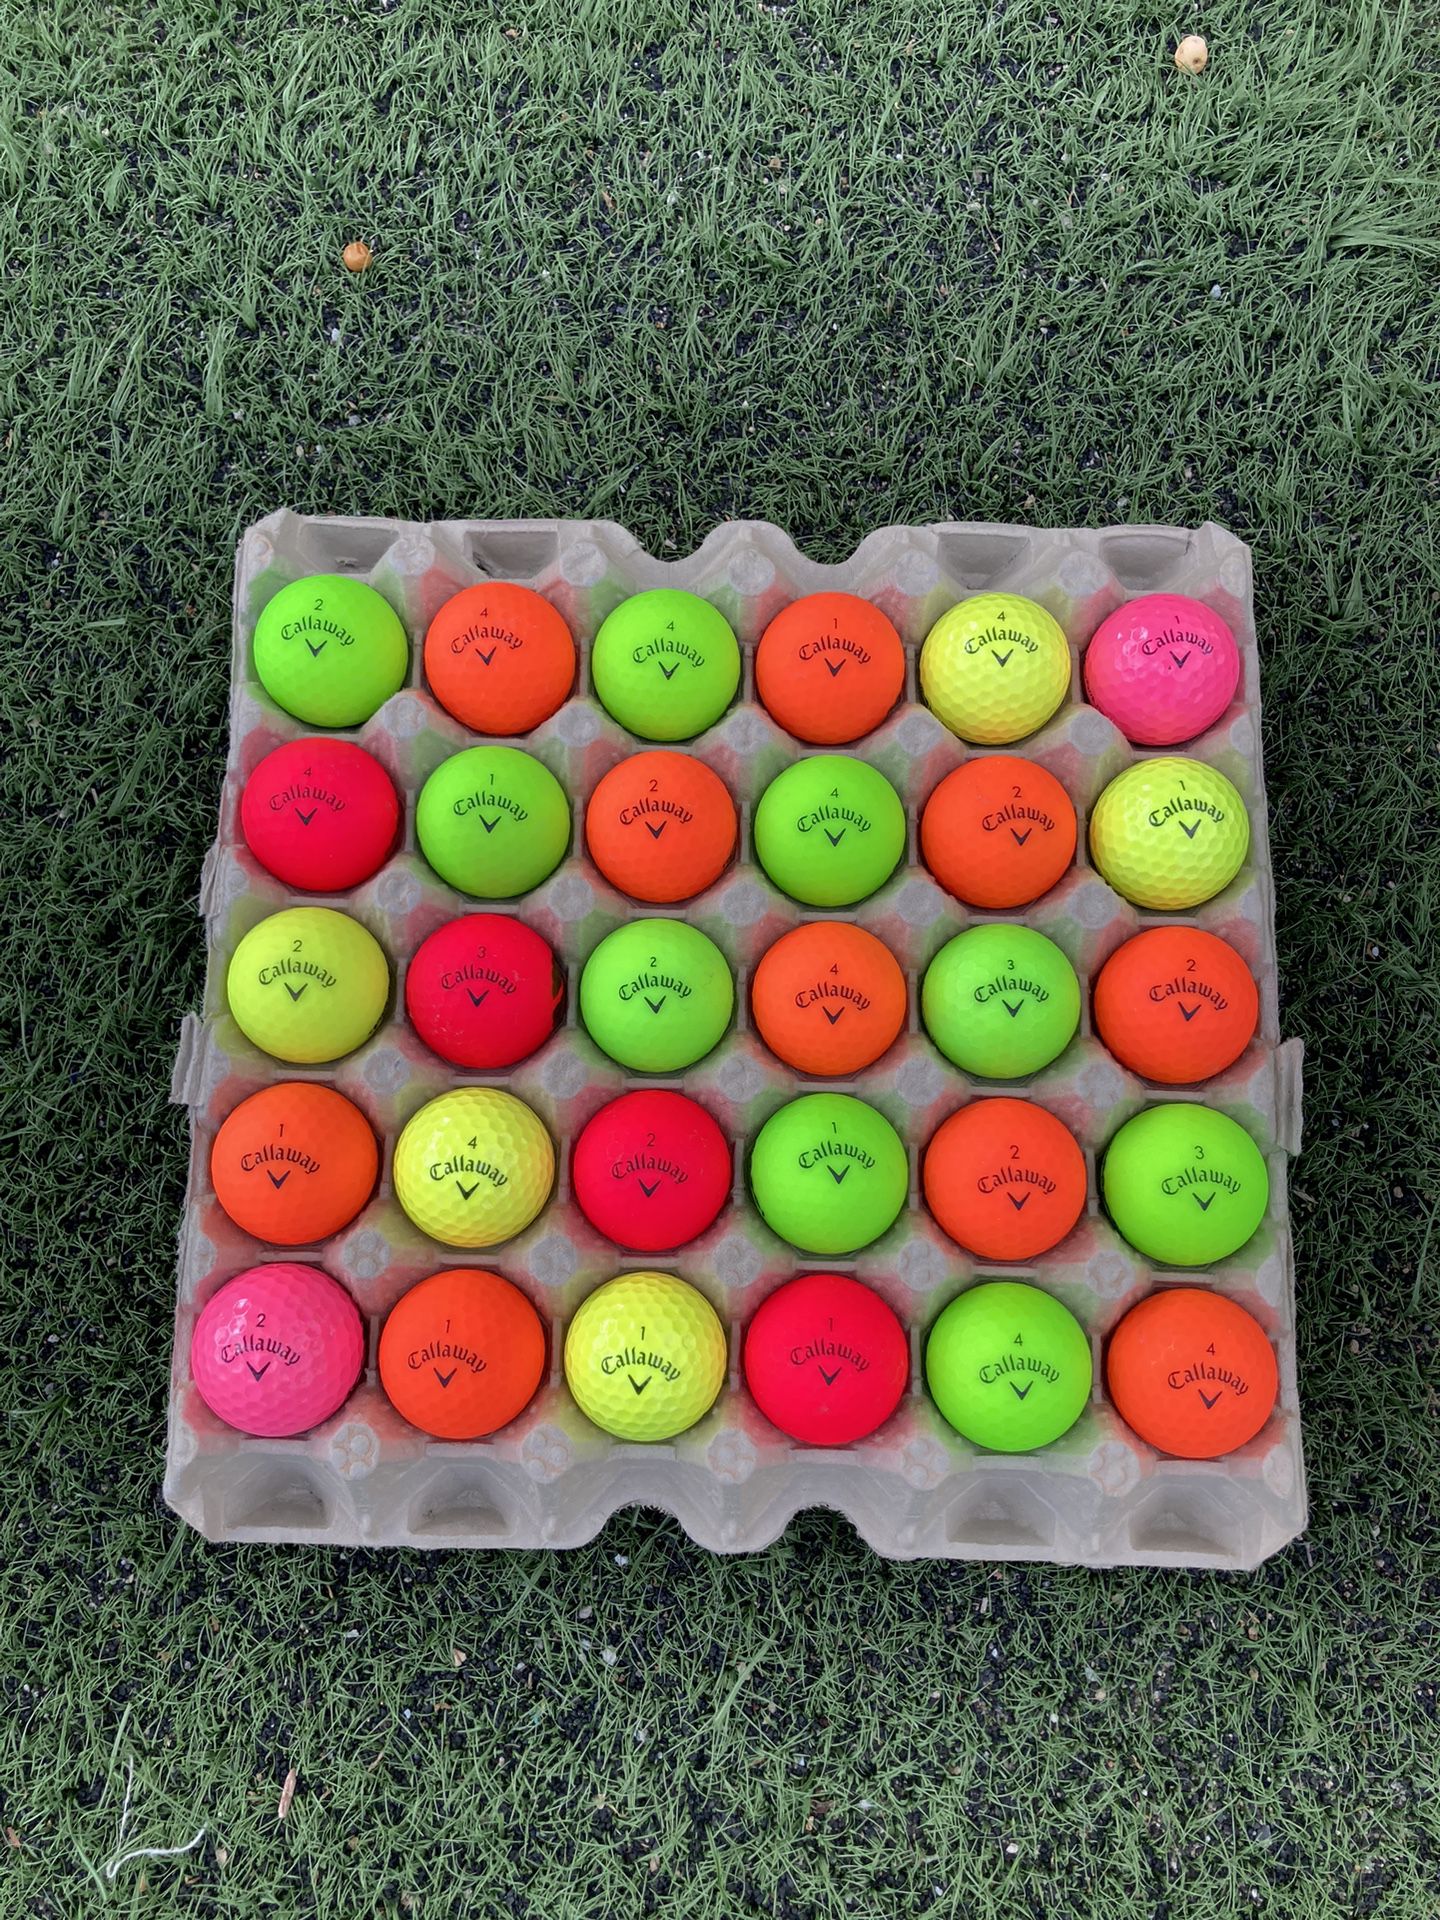 30 Golf ⛳️ Balls Callaway The Color 